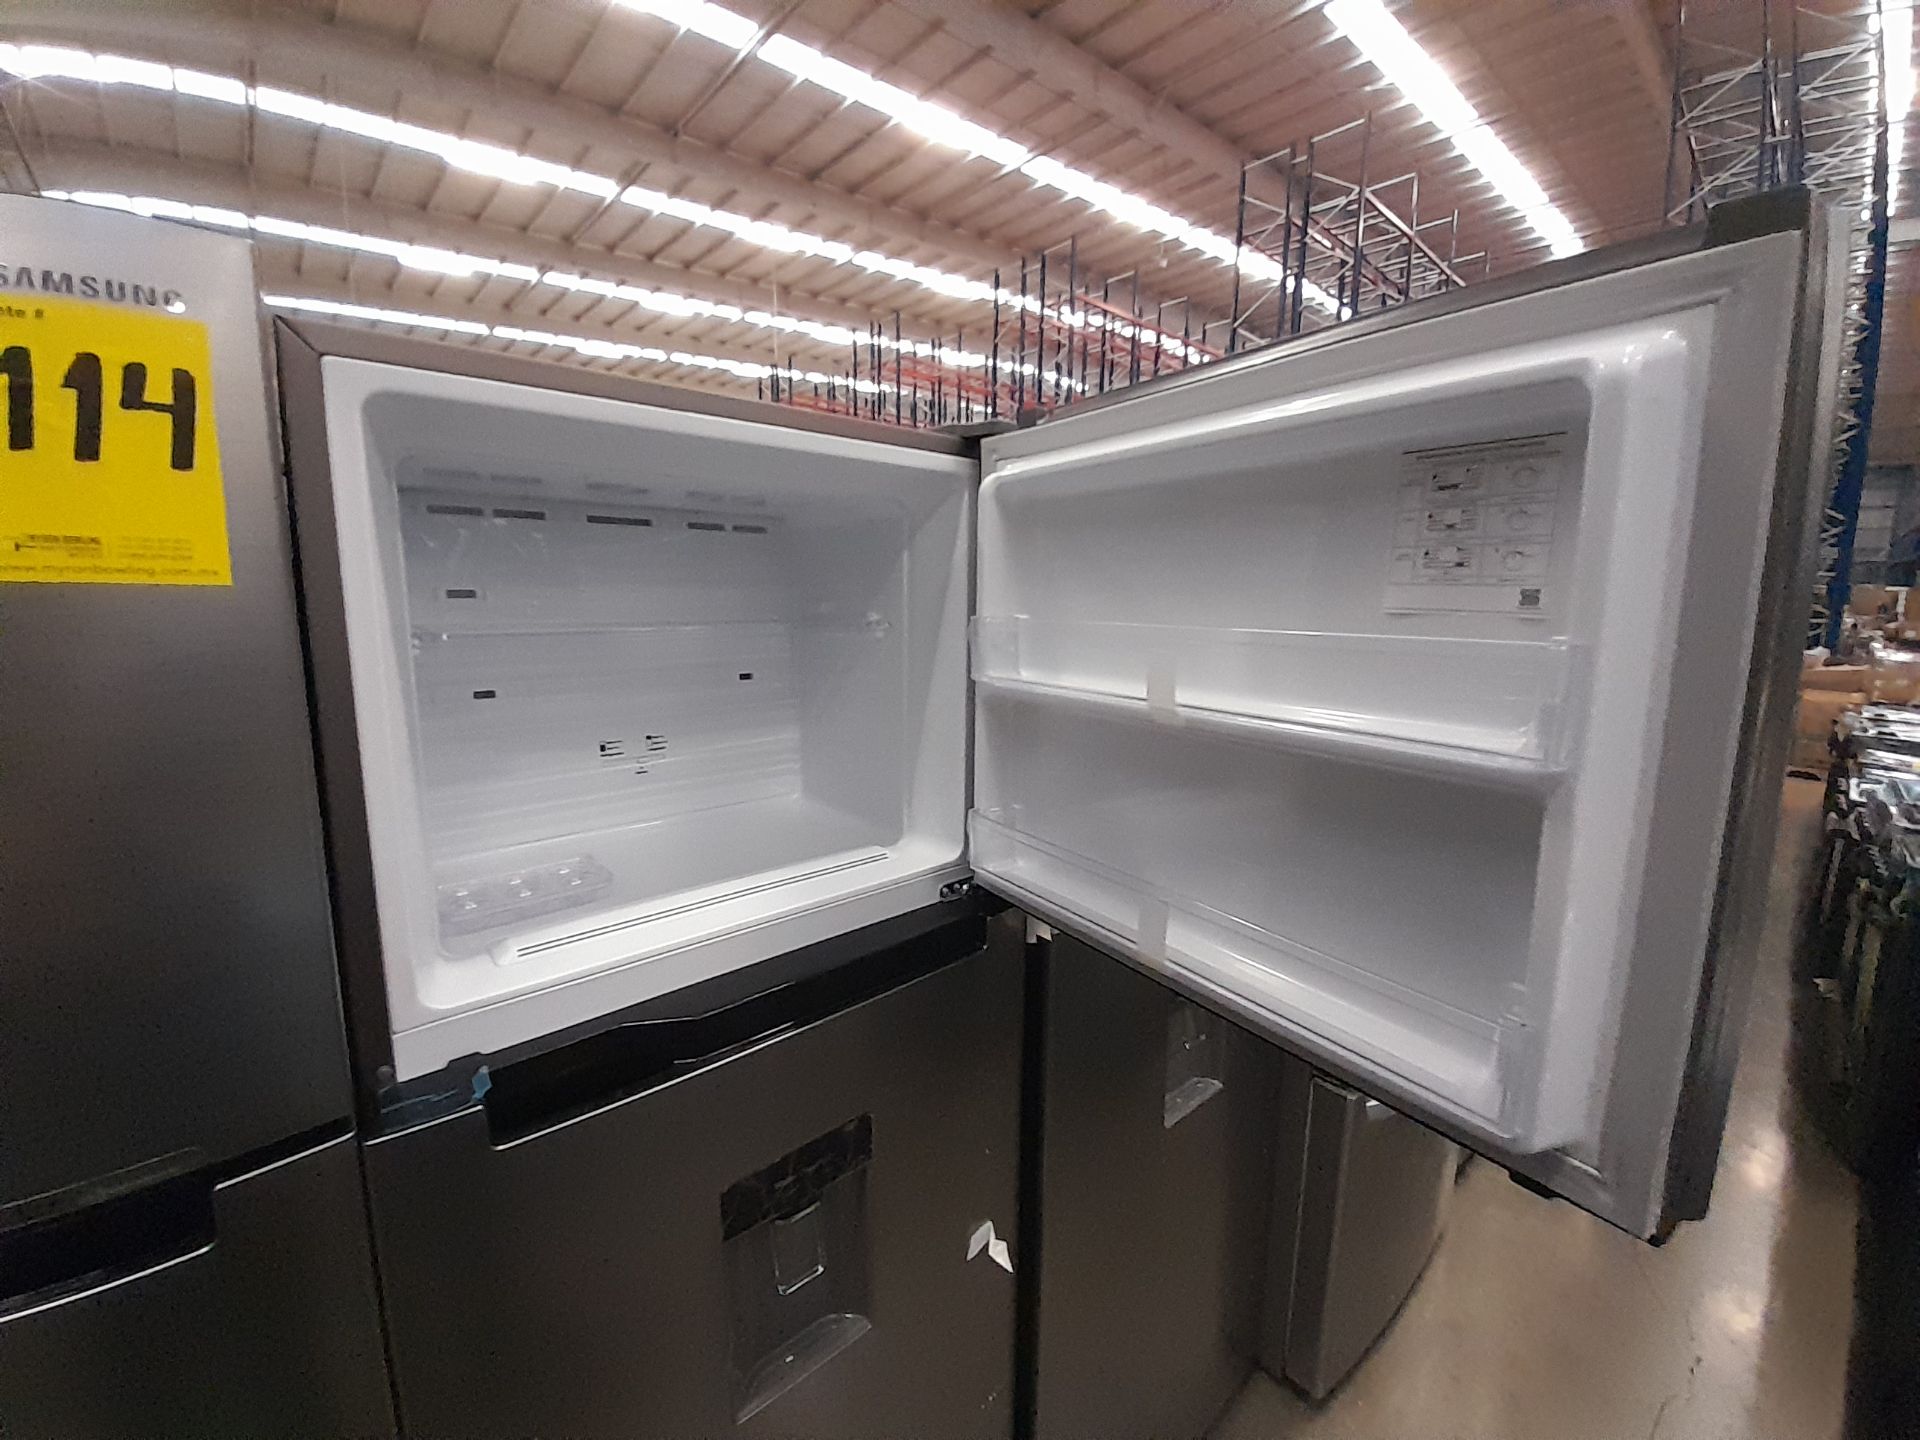 Lote de 2 refrigeradores contiene: 1 refrigerador Marca SAMSUNG, Modelo RT38A57IJS9, Serie 01144F, - Image 6 of 8